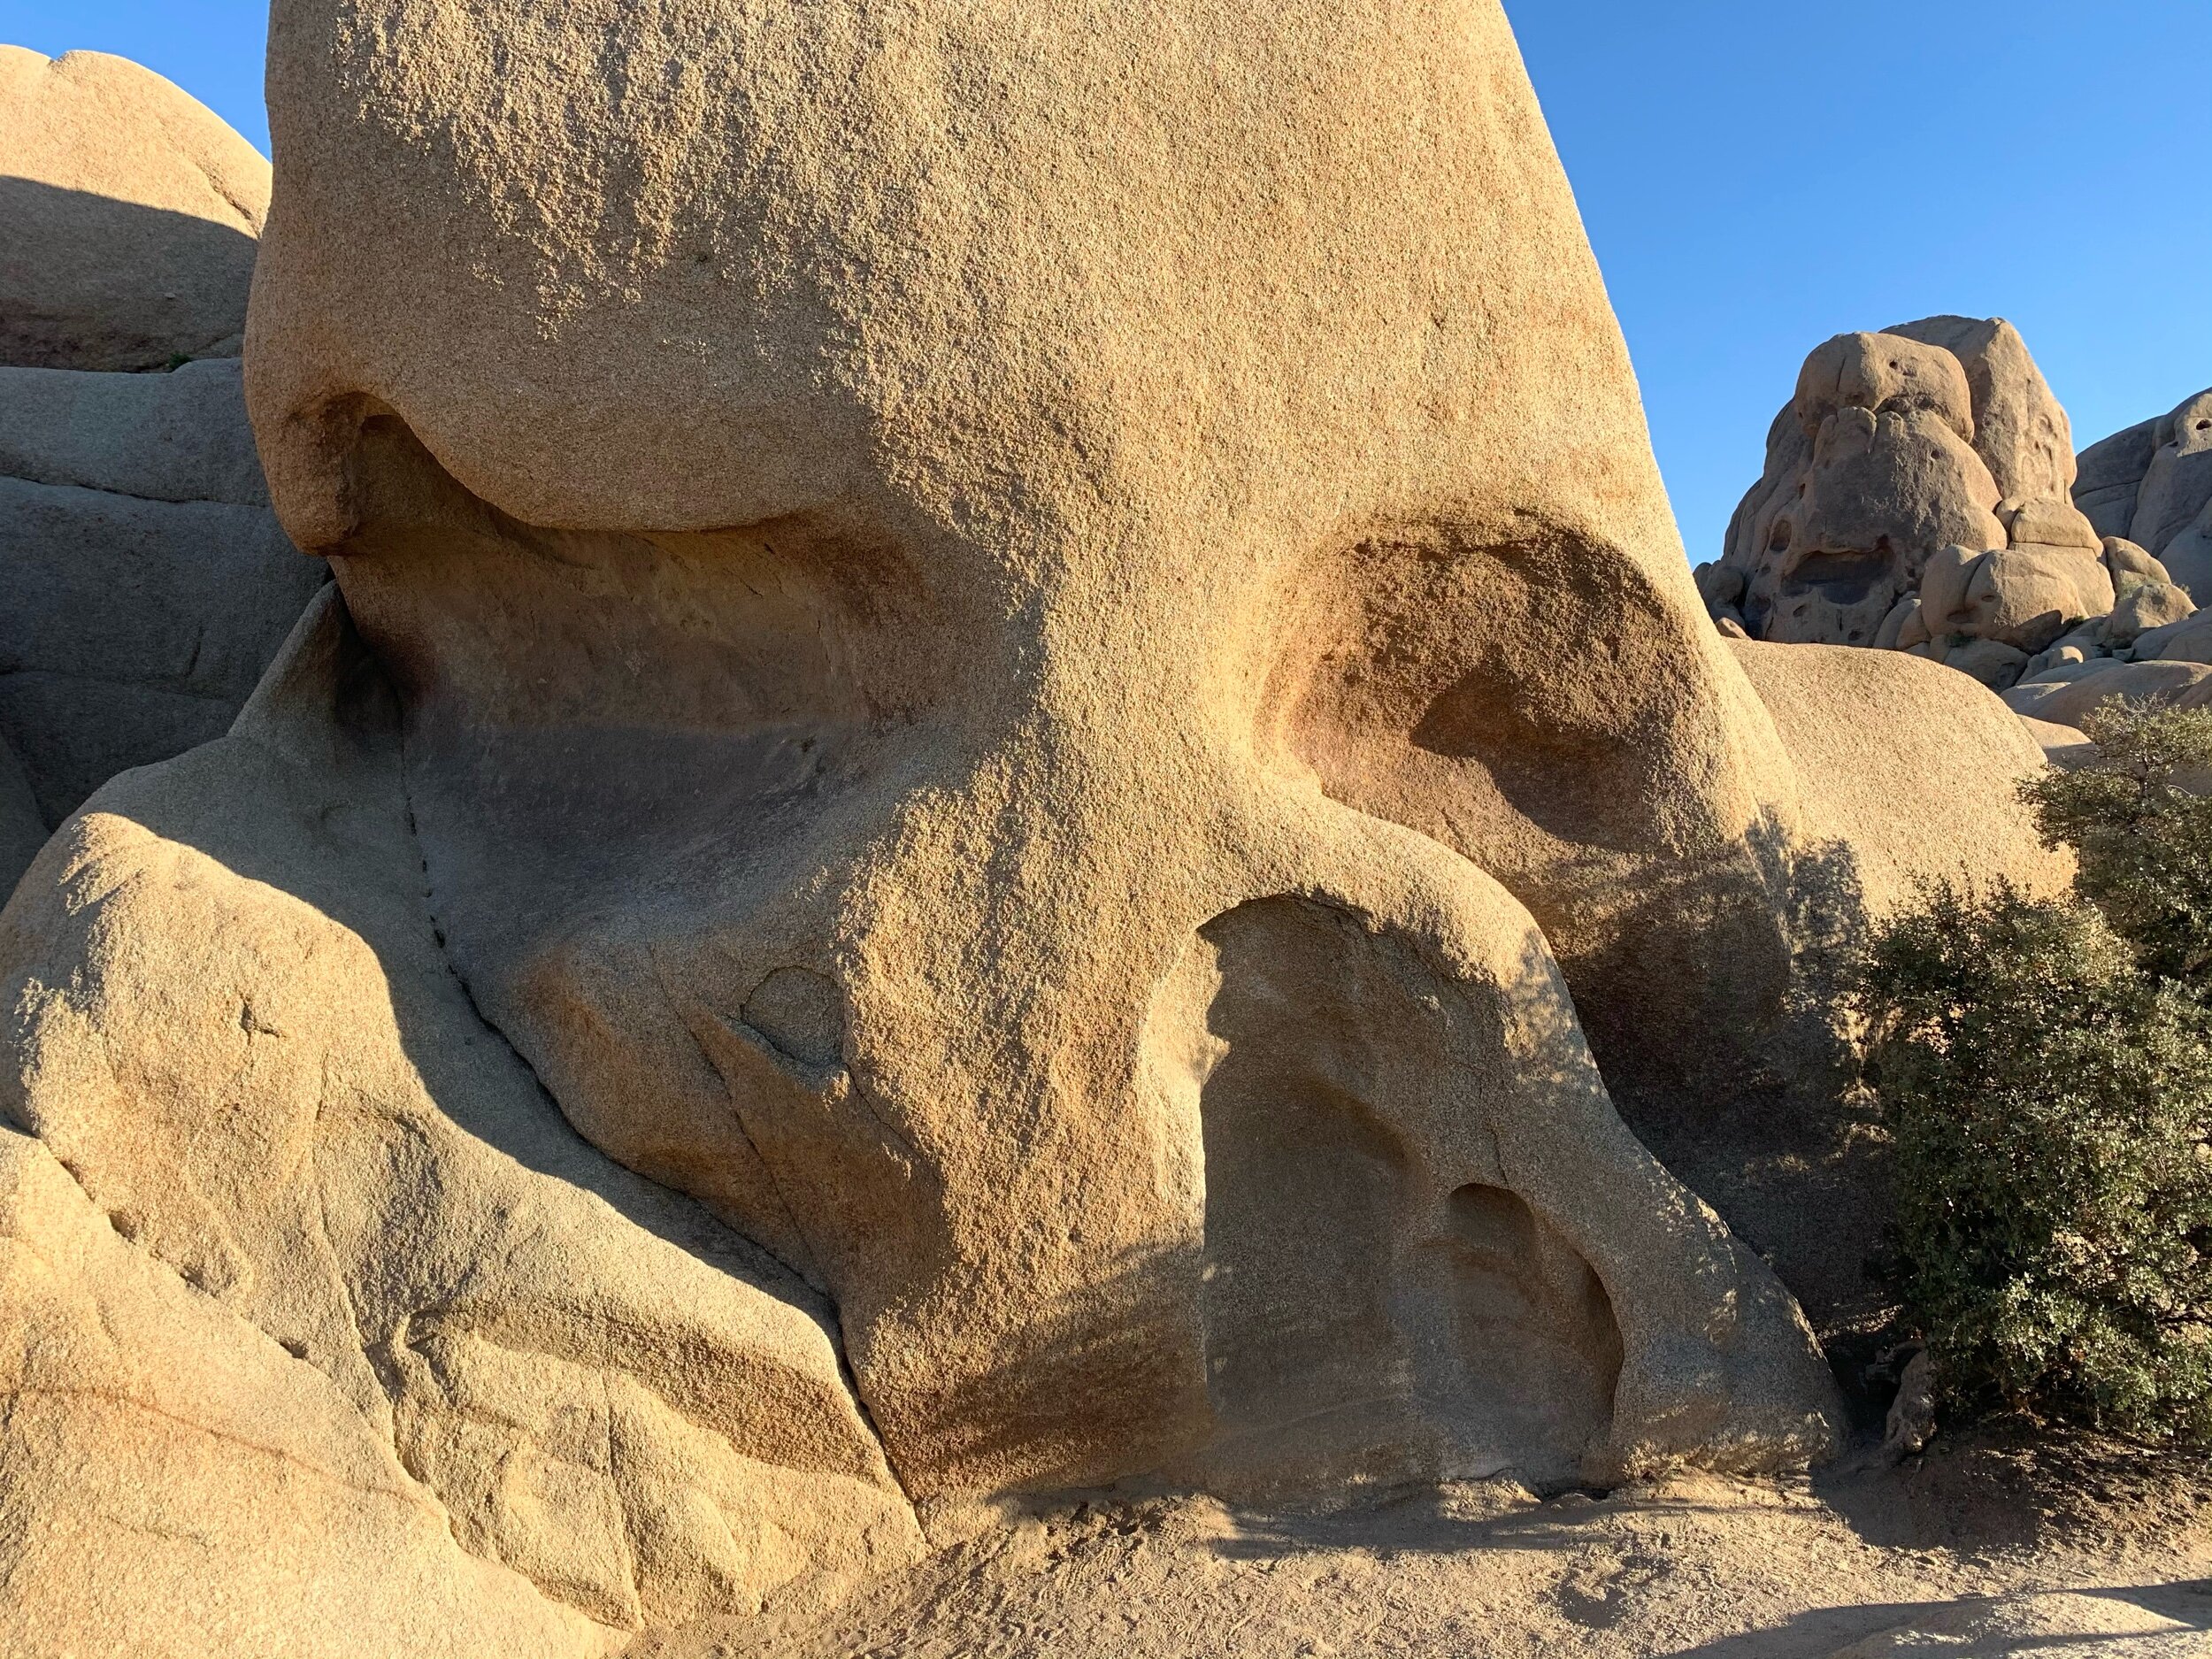   Skull Rock  is a popular attraction at Joshua Tree.  